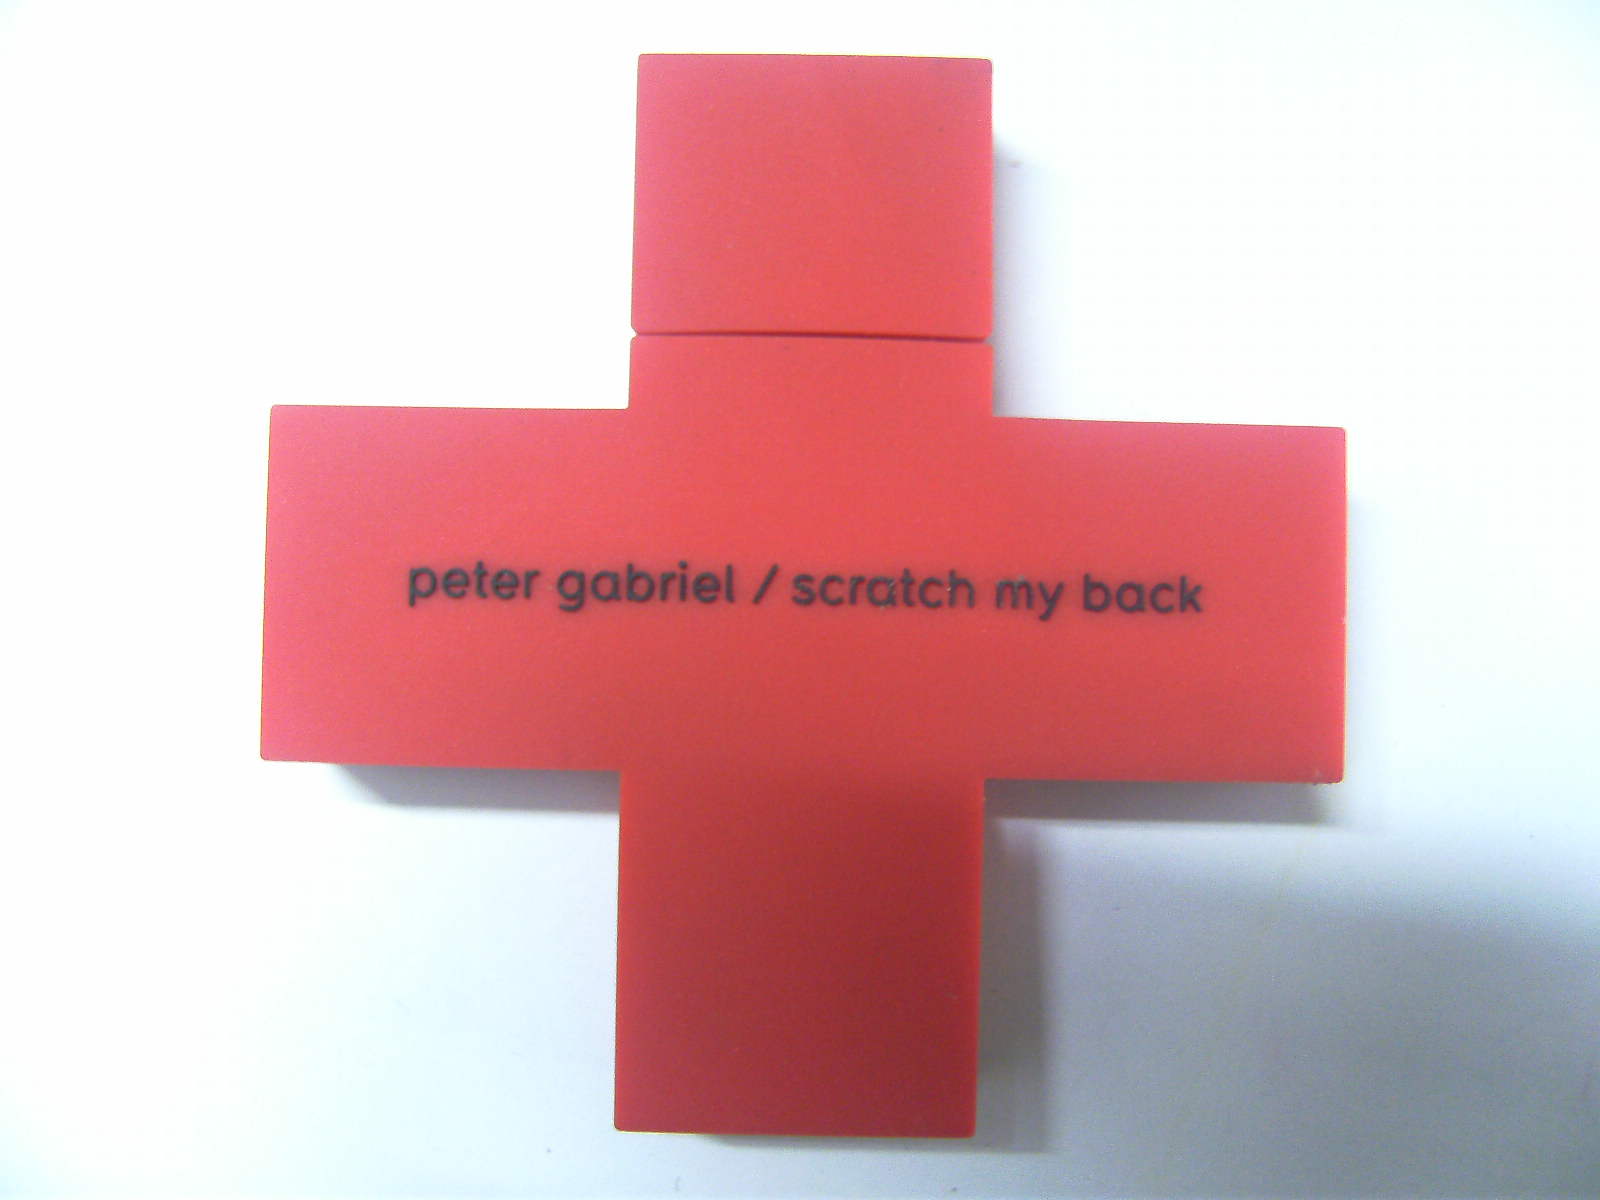 Scratch my back peter gabriel flac